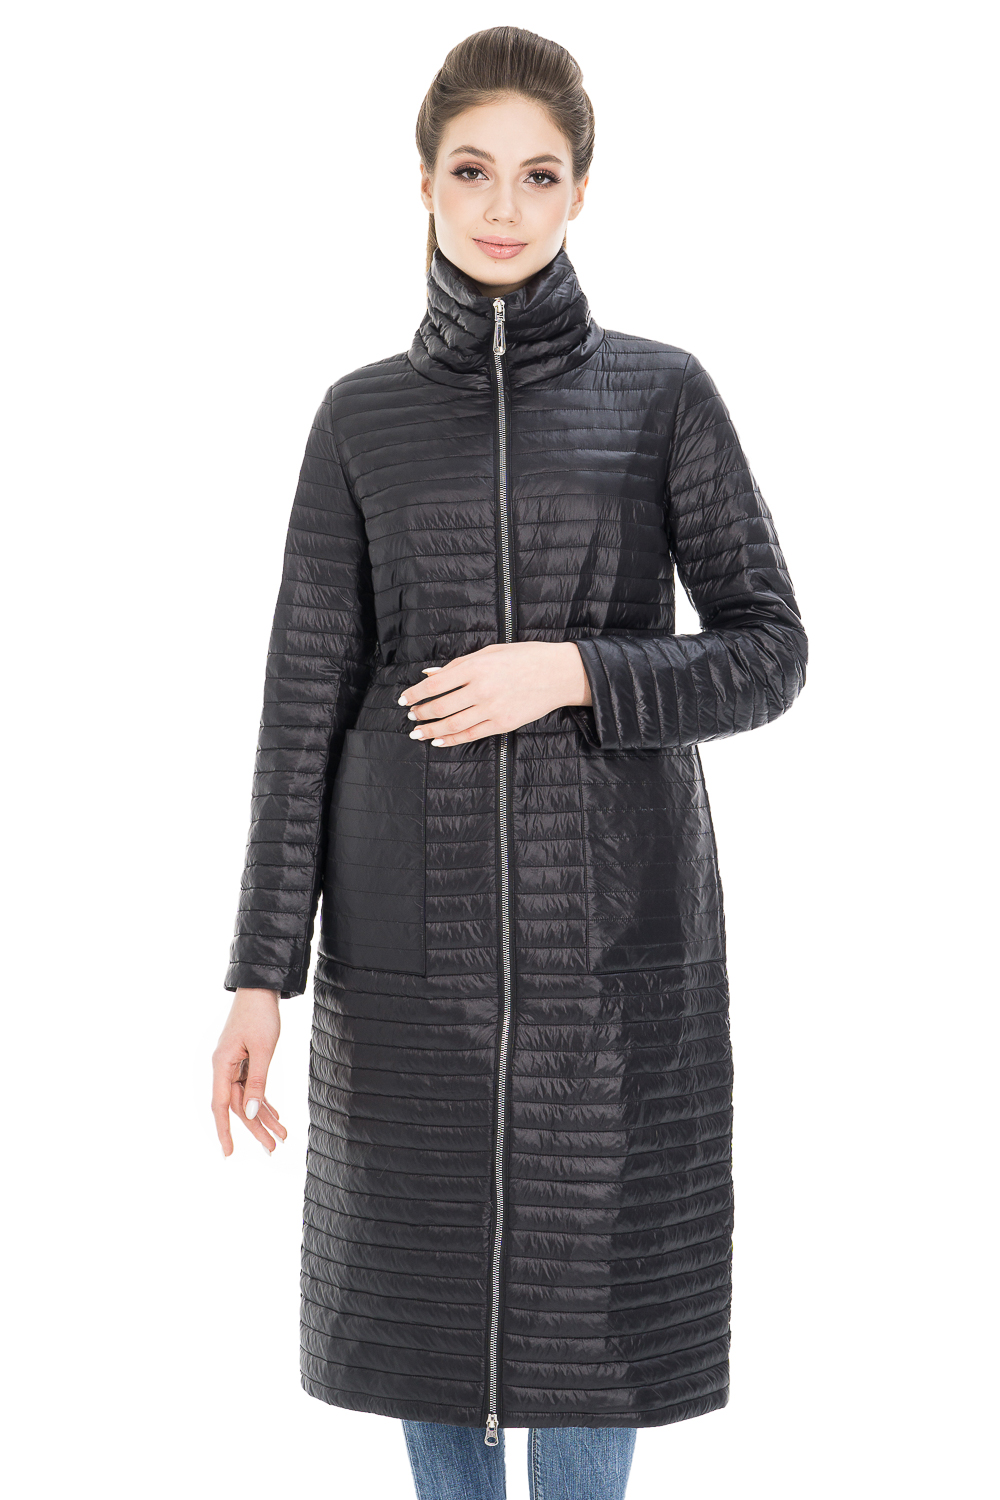 Пальто женское OHARA CC-20900 черное 46 RU